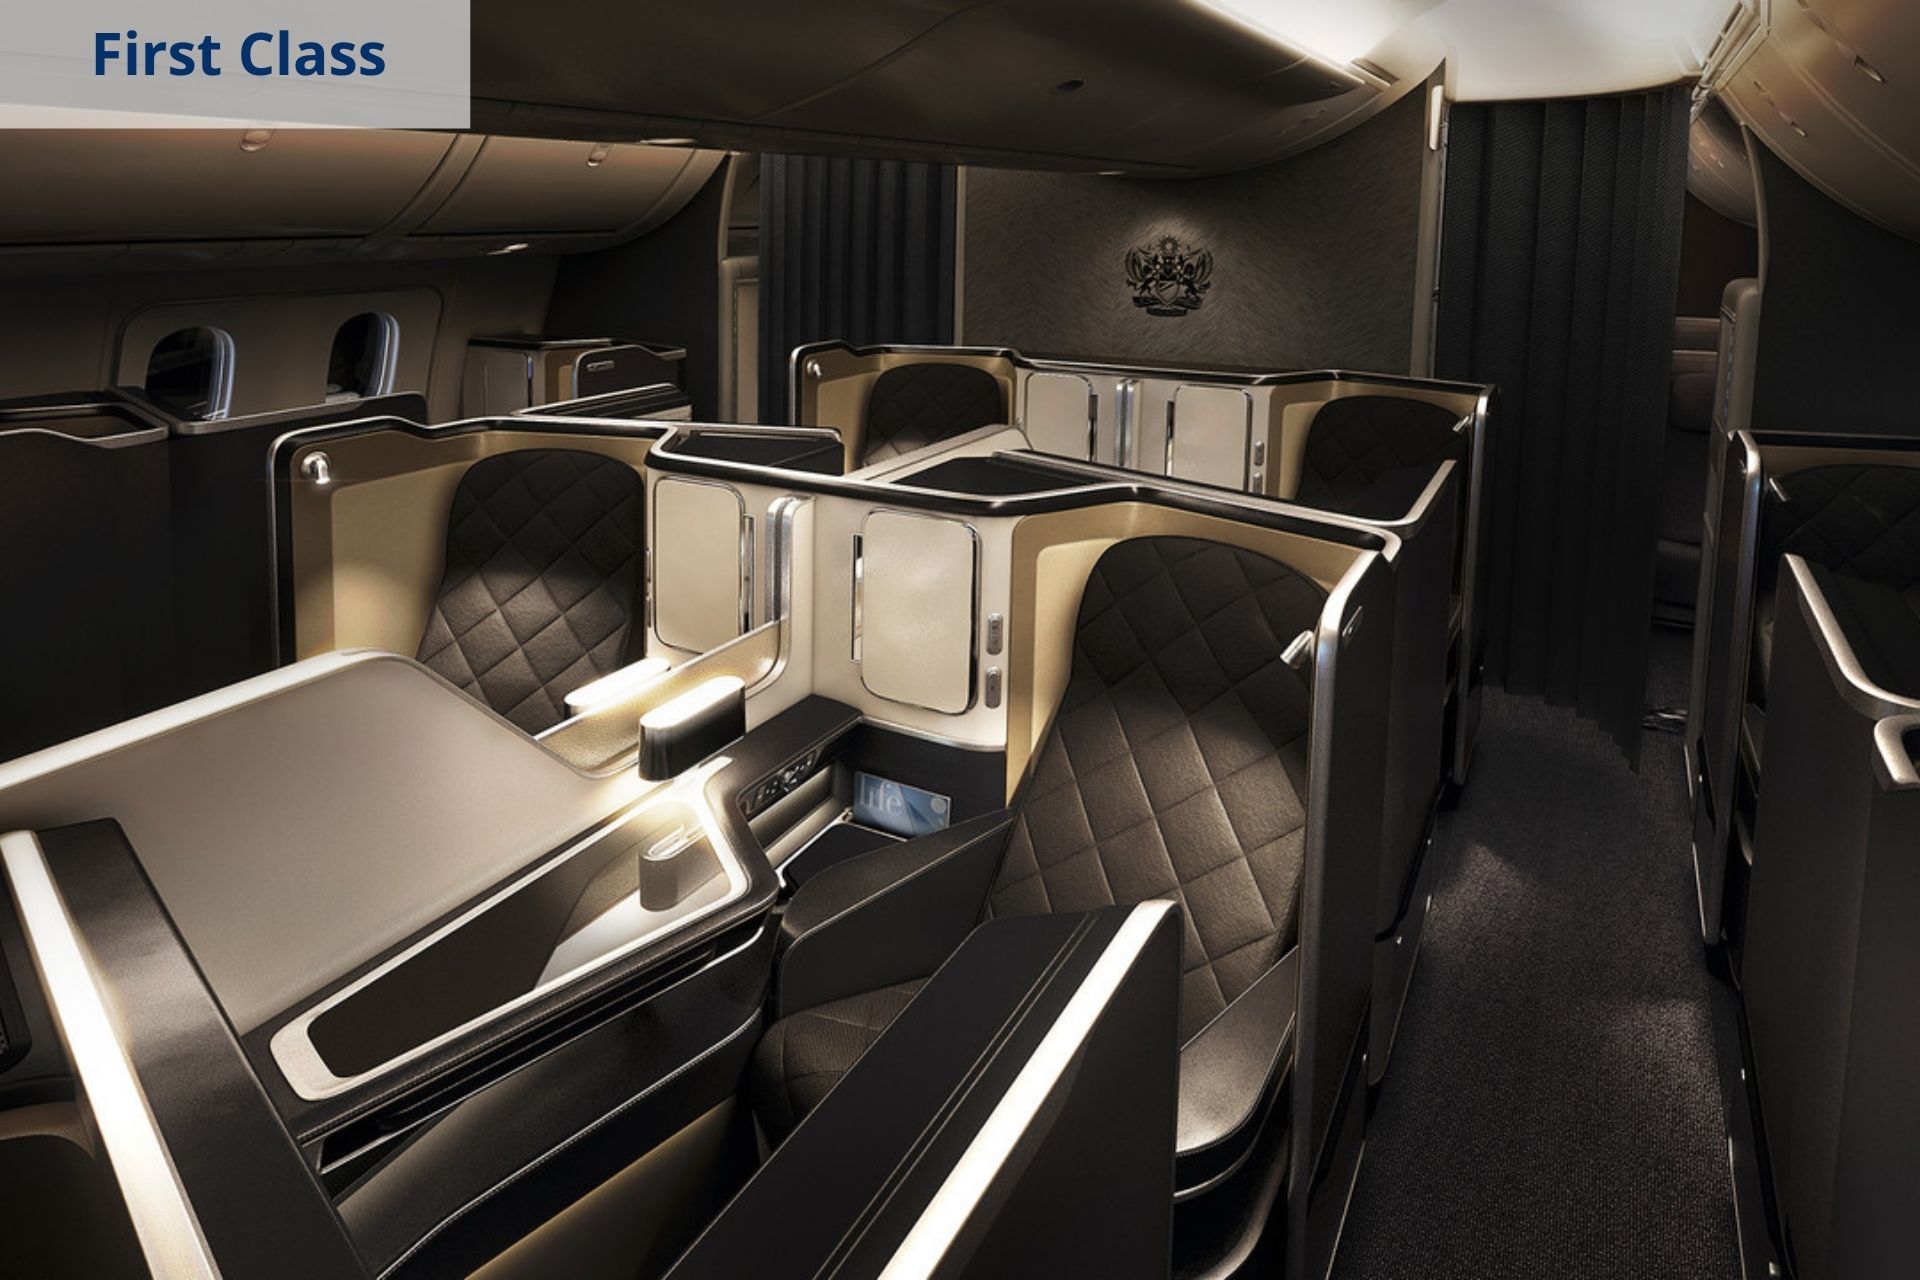 British Airways first class